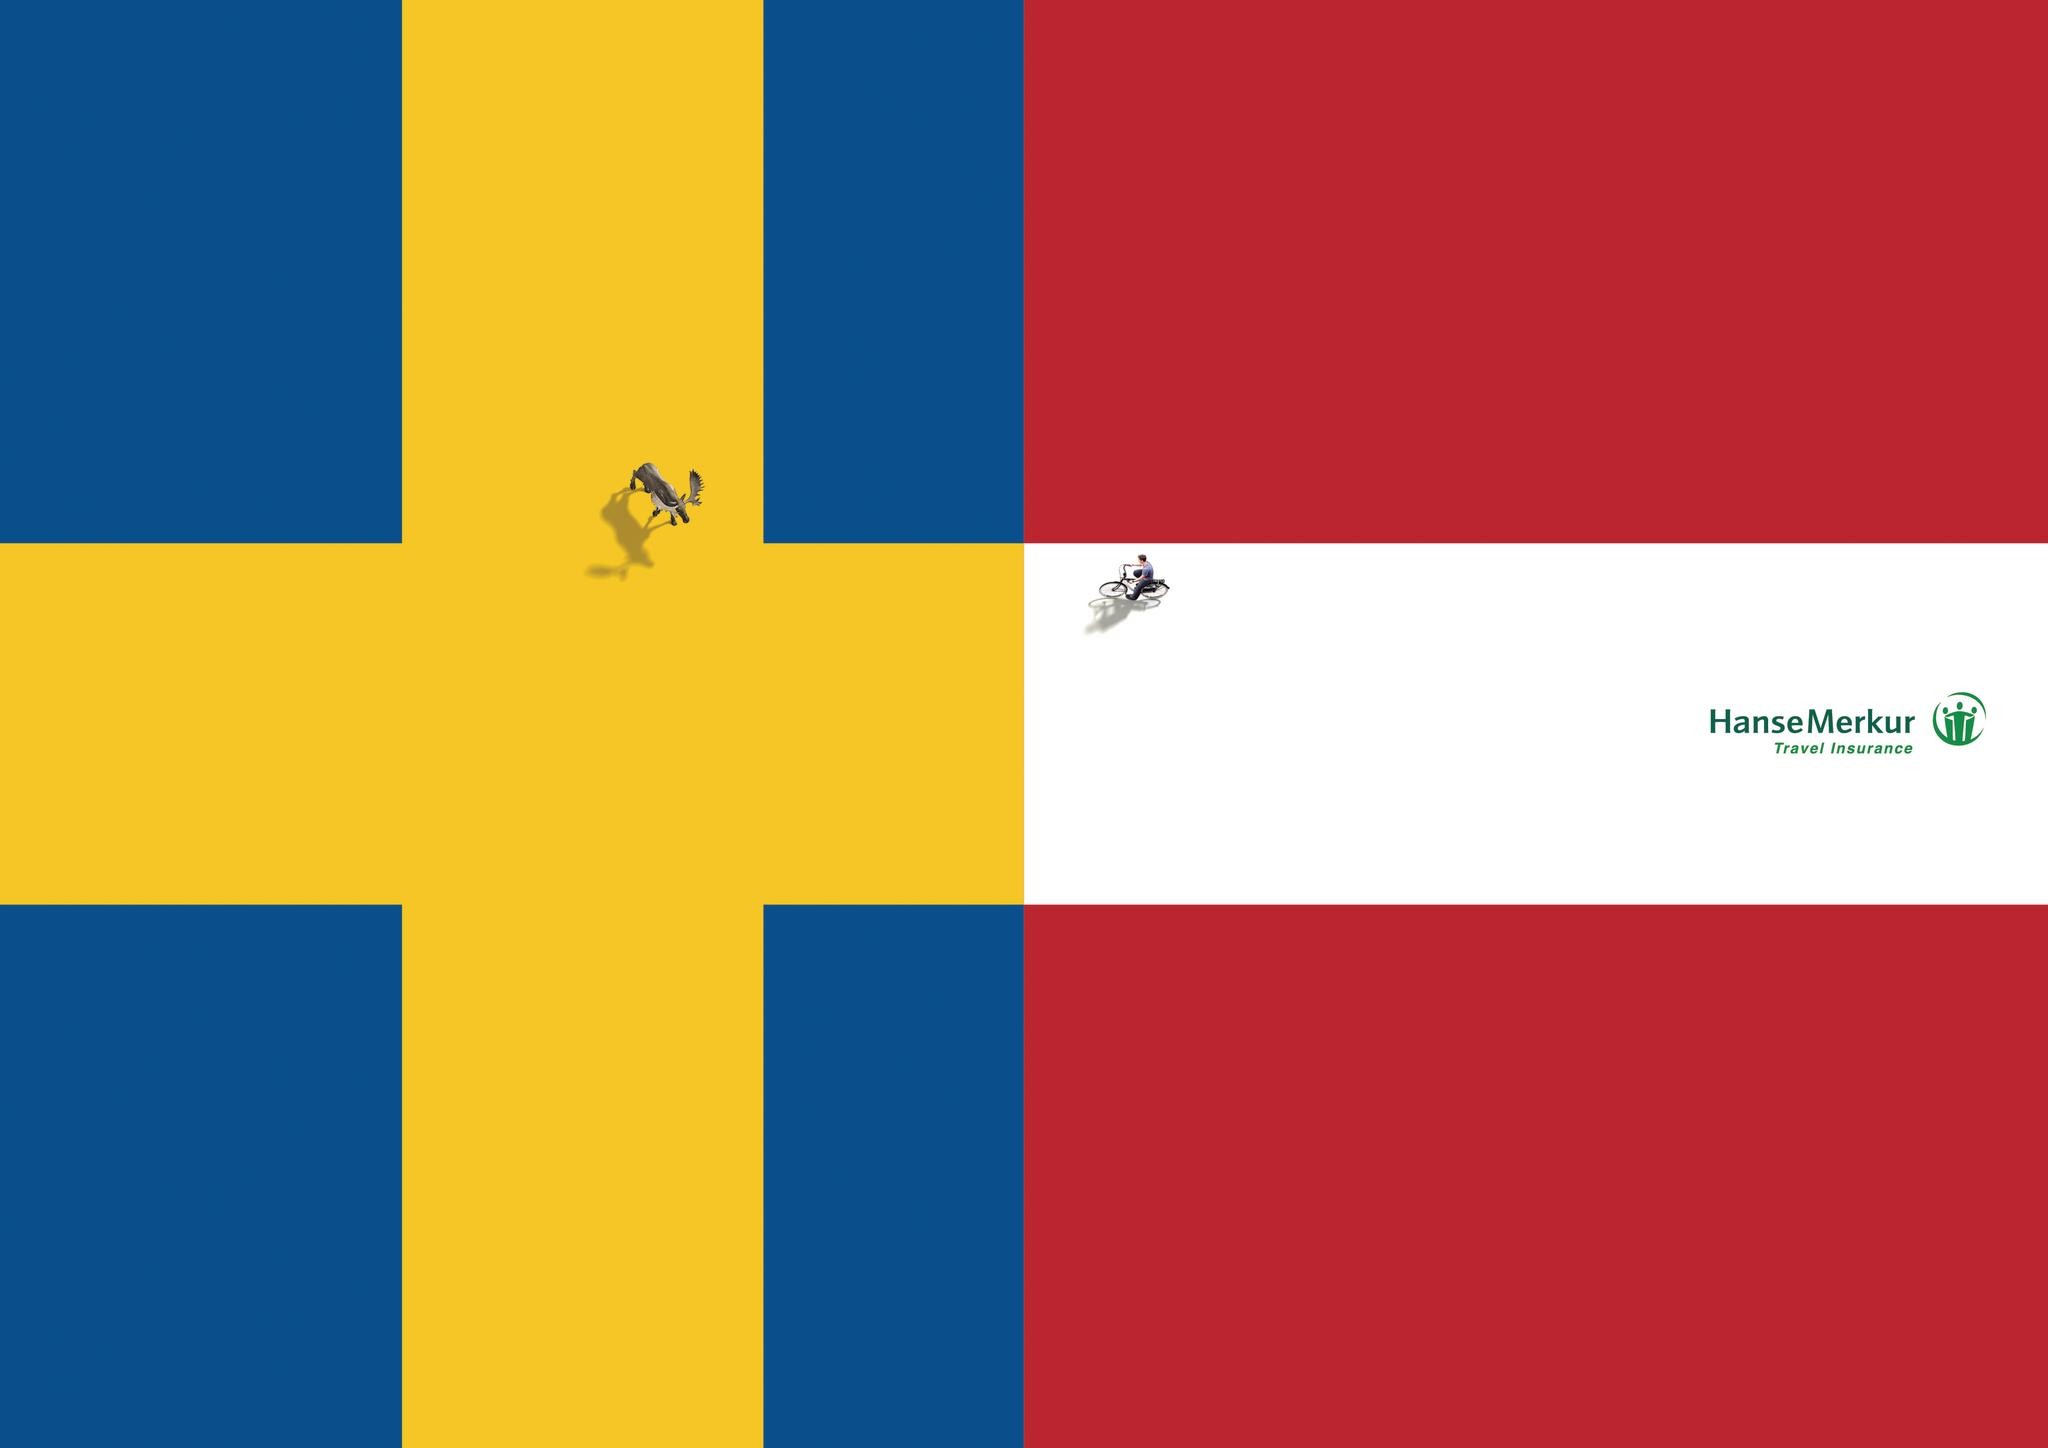 SWEDEN / DENMARK